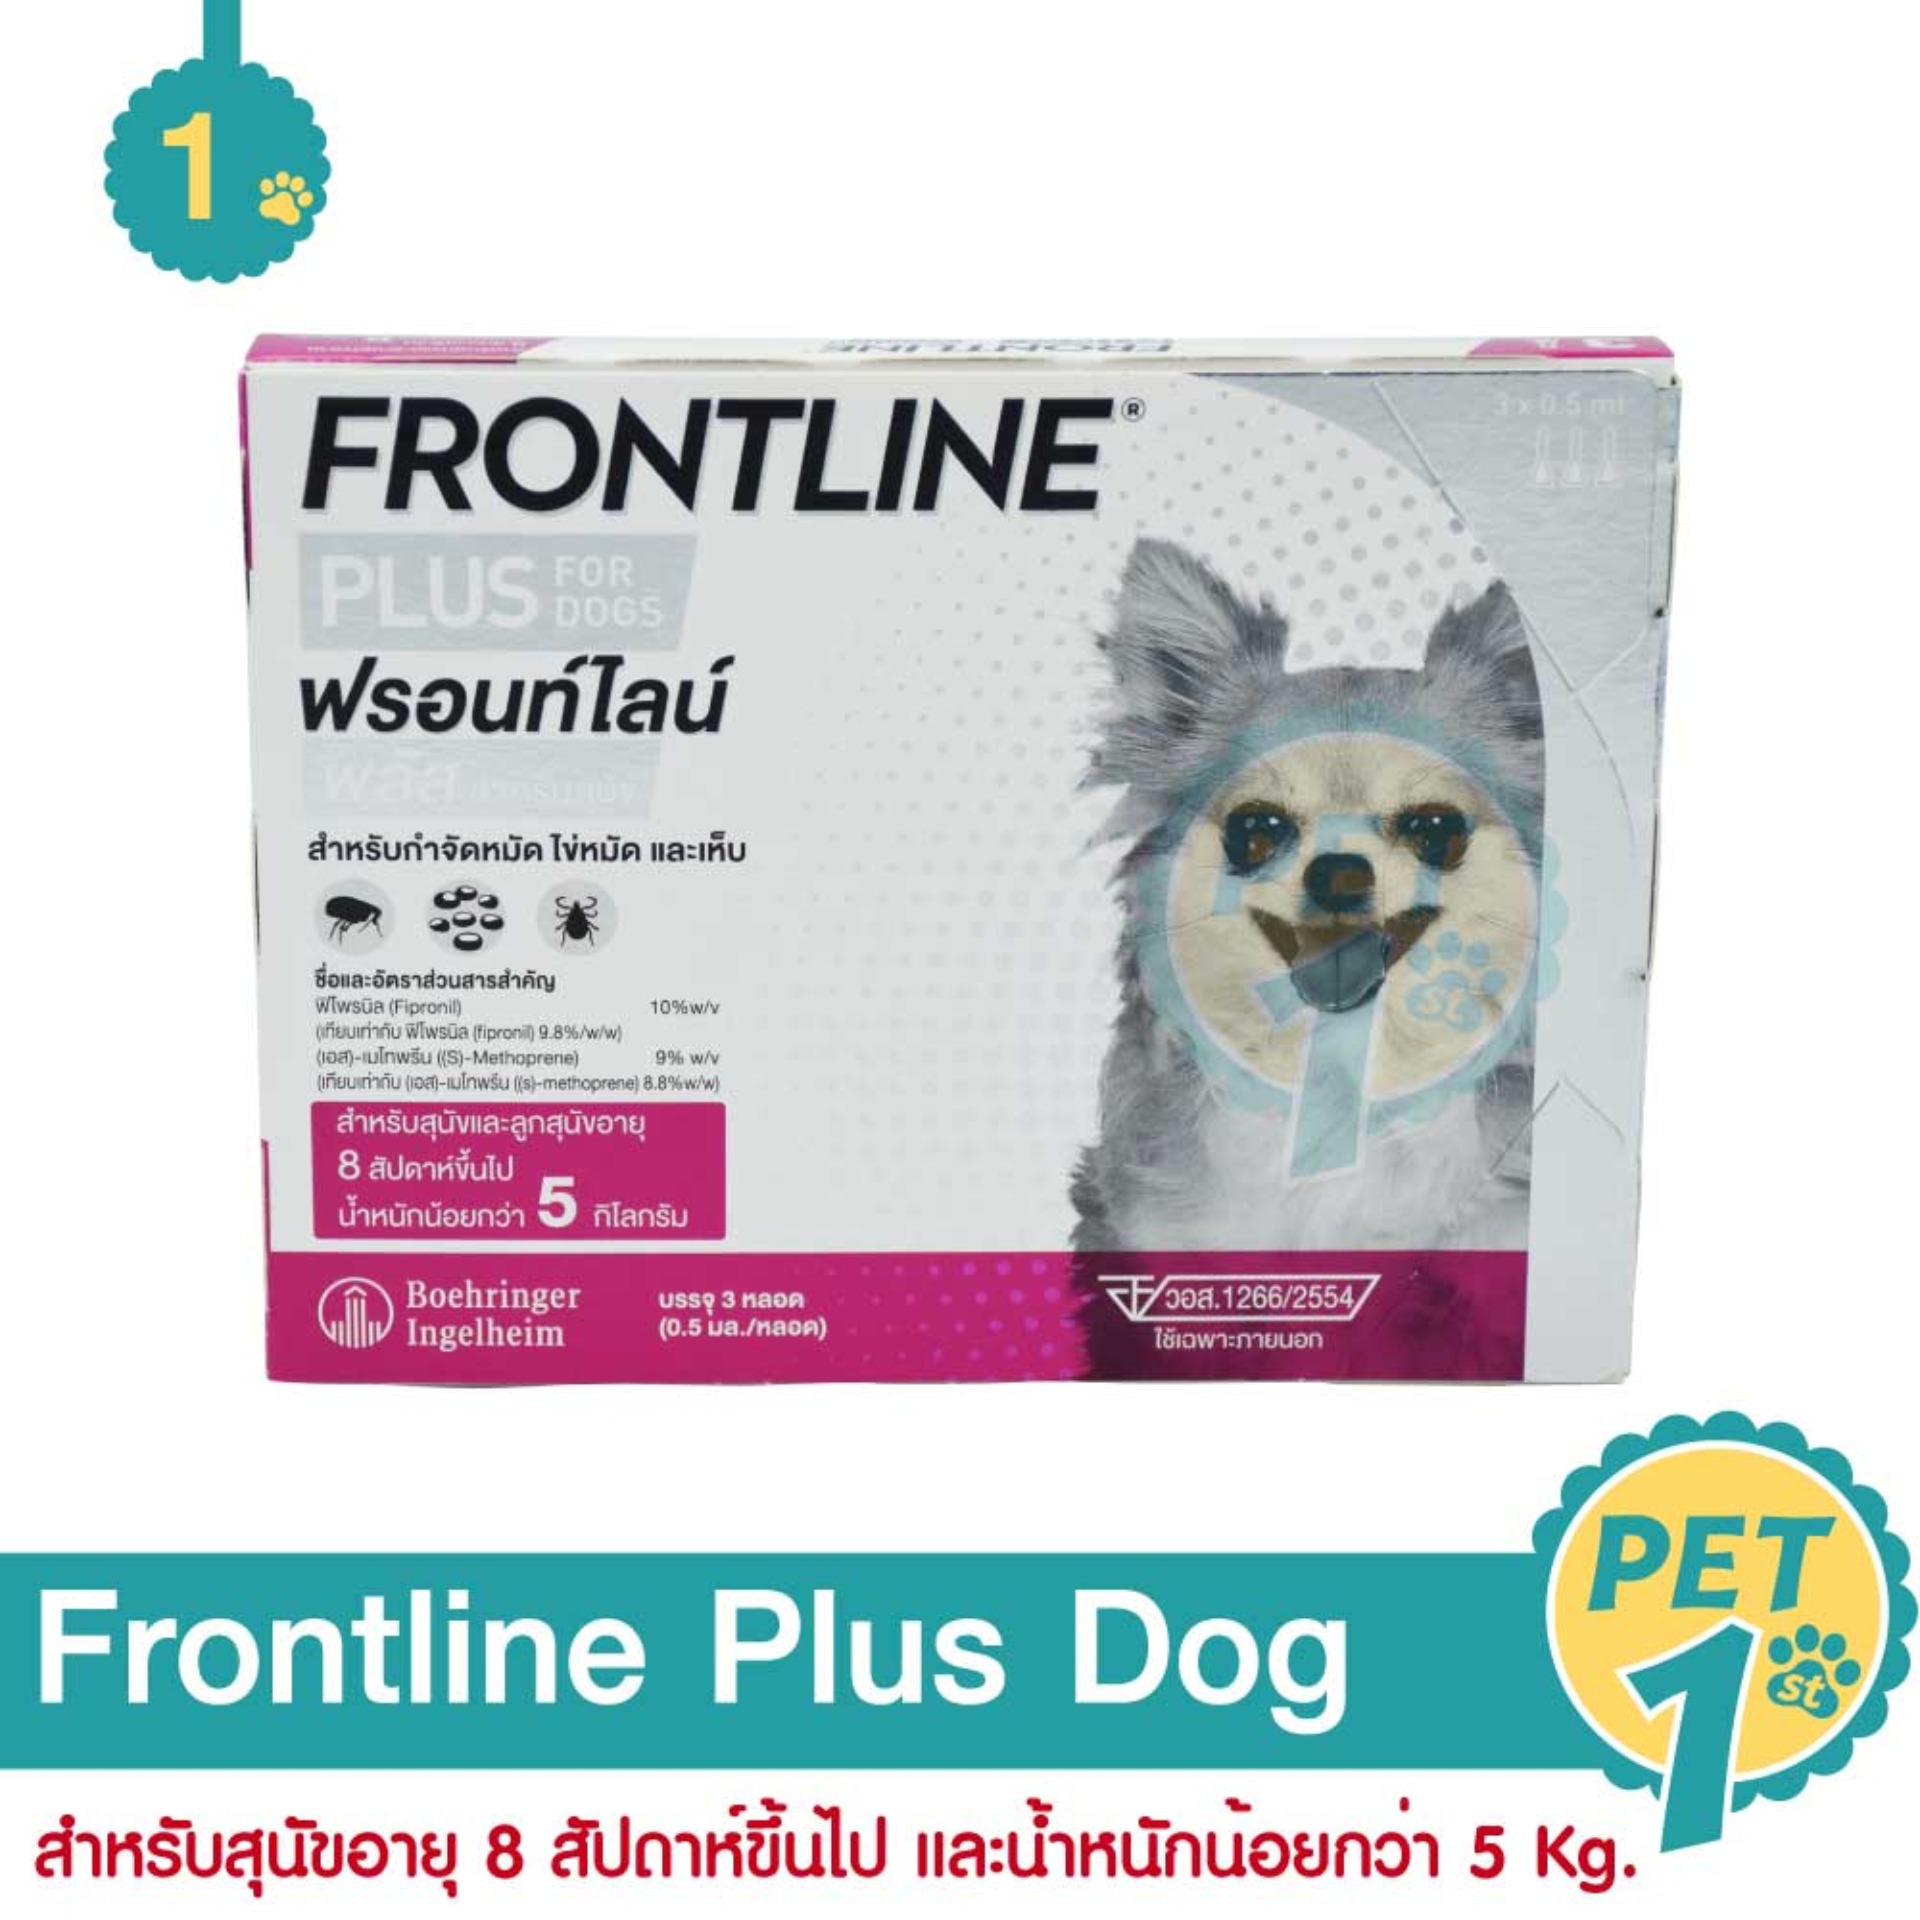 Frontline Plus Dog ฟรอนท์ไลน์ พลัส ยาหยดกำจัดเห็บหมัด สำหรับสุนัข น้ำหนักไม่เกิน 5 Kg.